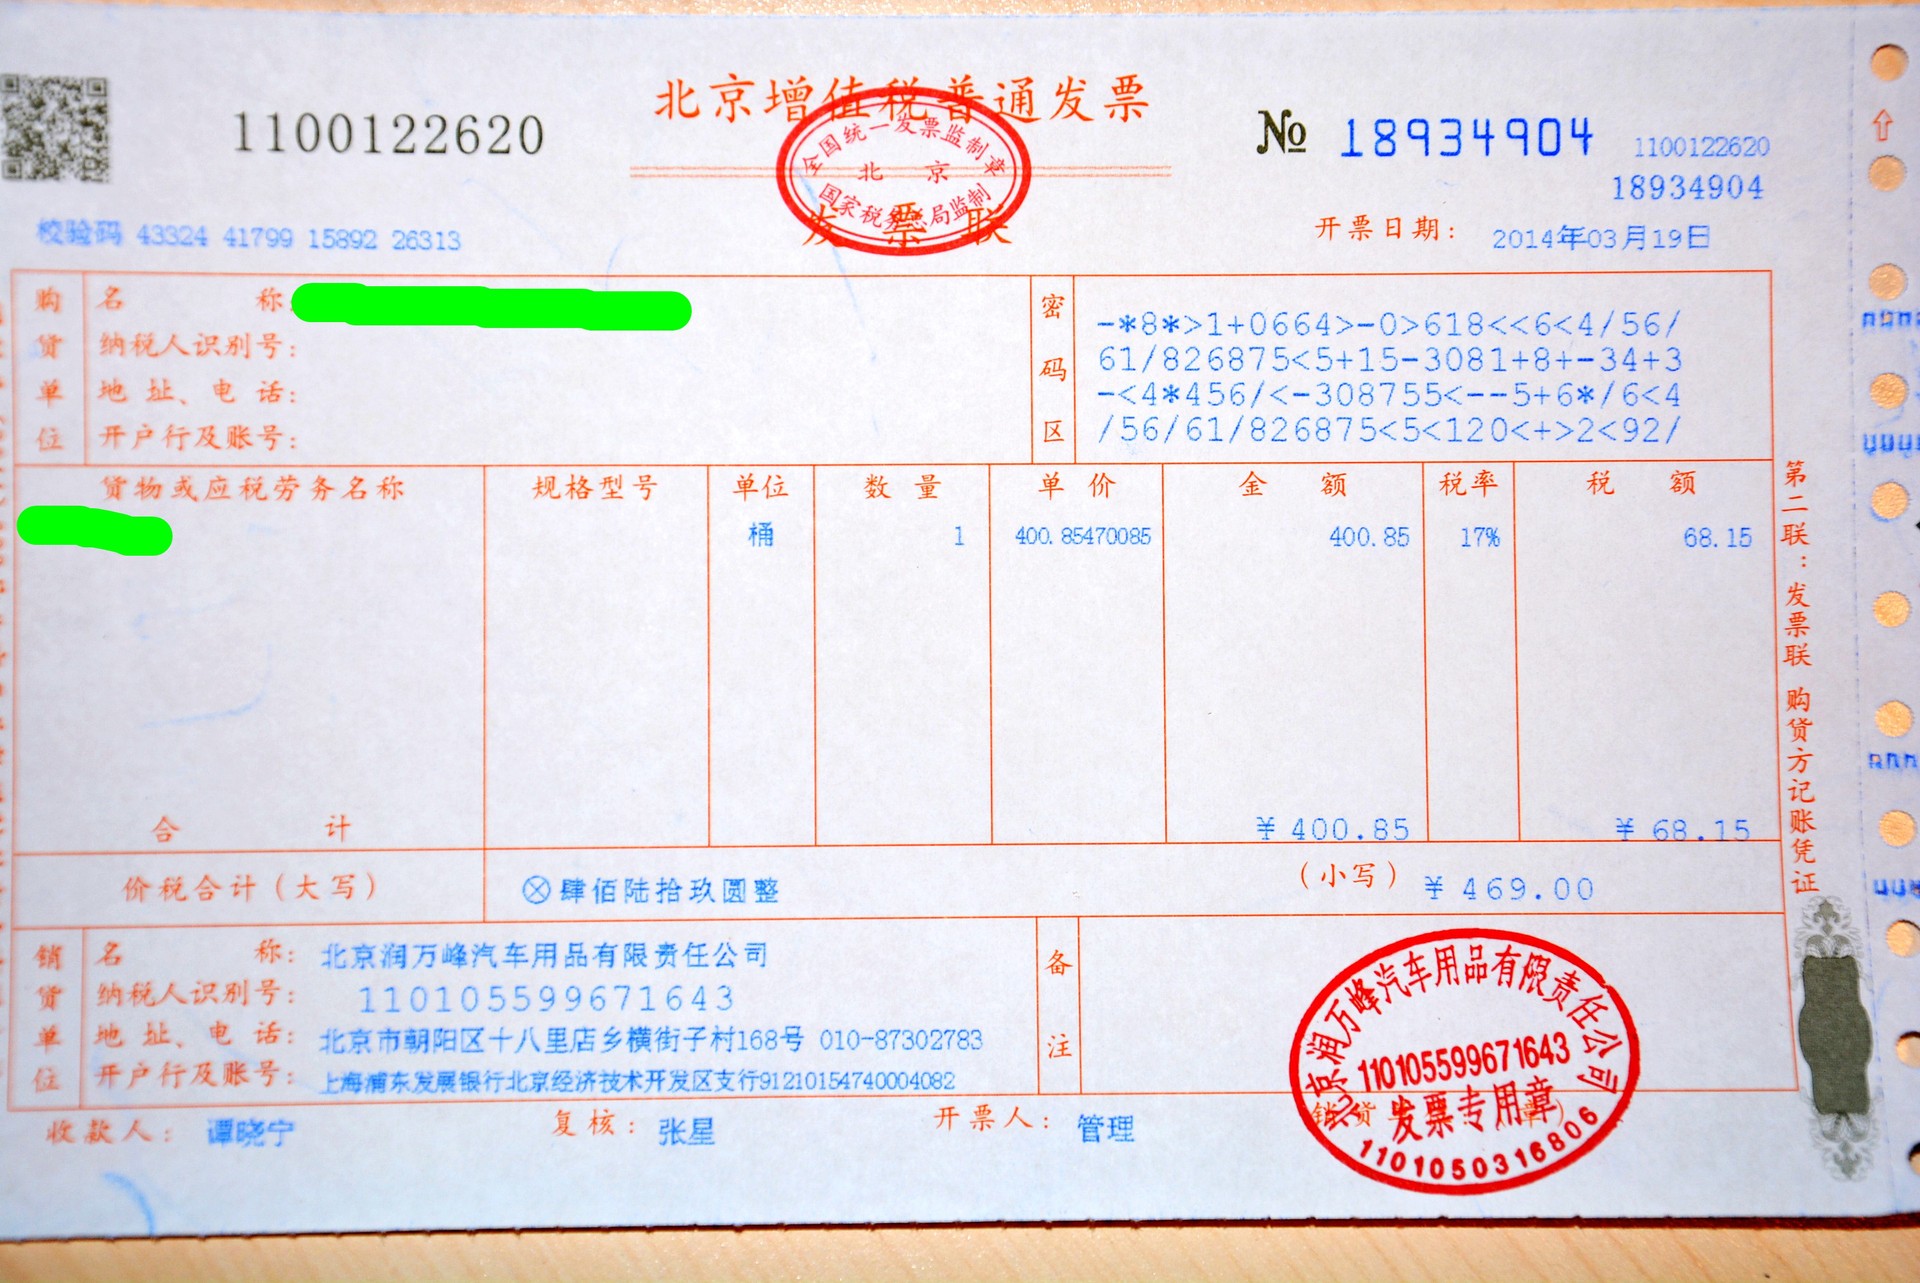 磨合保护剂润万峰商城可以开具增值税普通发票和增值税专用发票,注意